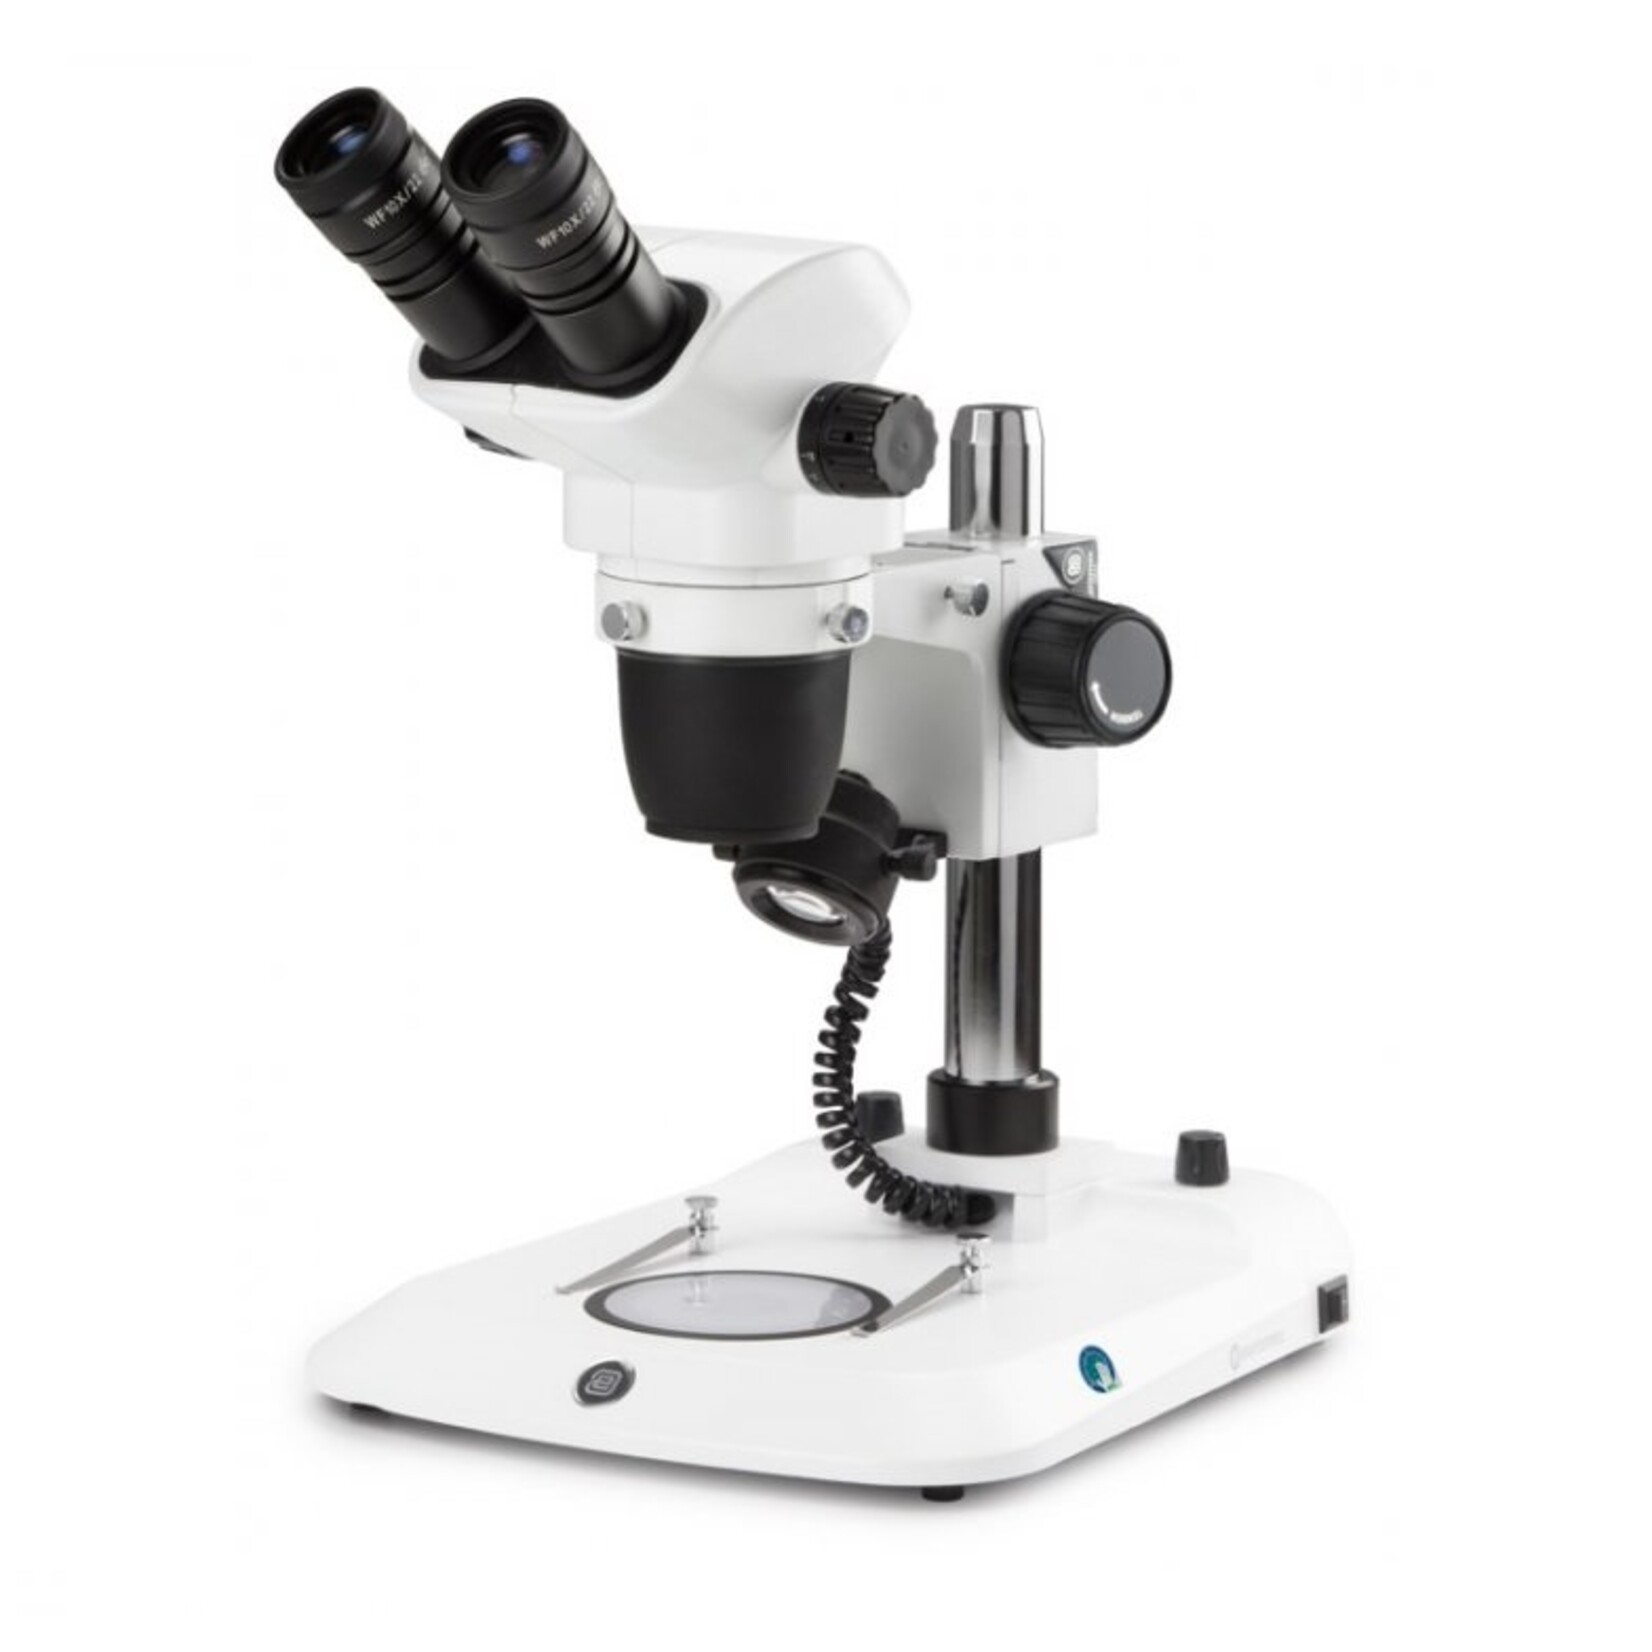 Microscopio binoculare stereo zoom NexiusZoom, obiettivo da 0,67x a 4,5x, ingrandimento da 6,7x a 45x con supporto a colonna